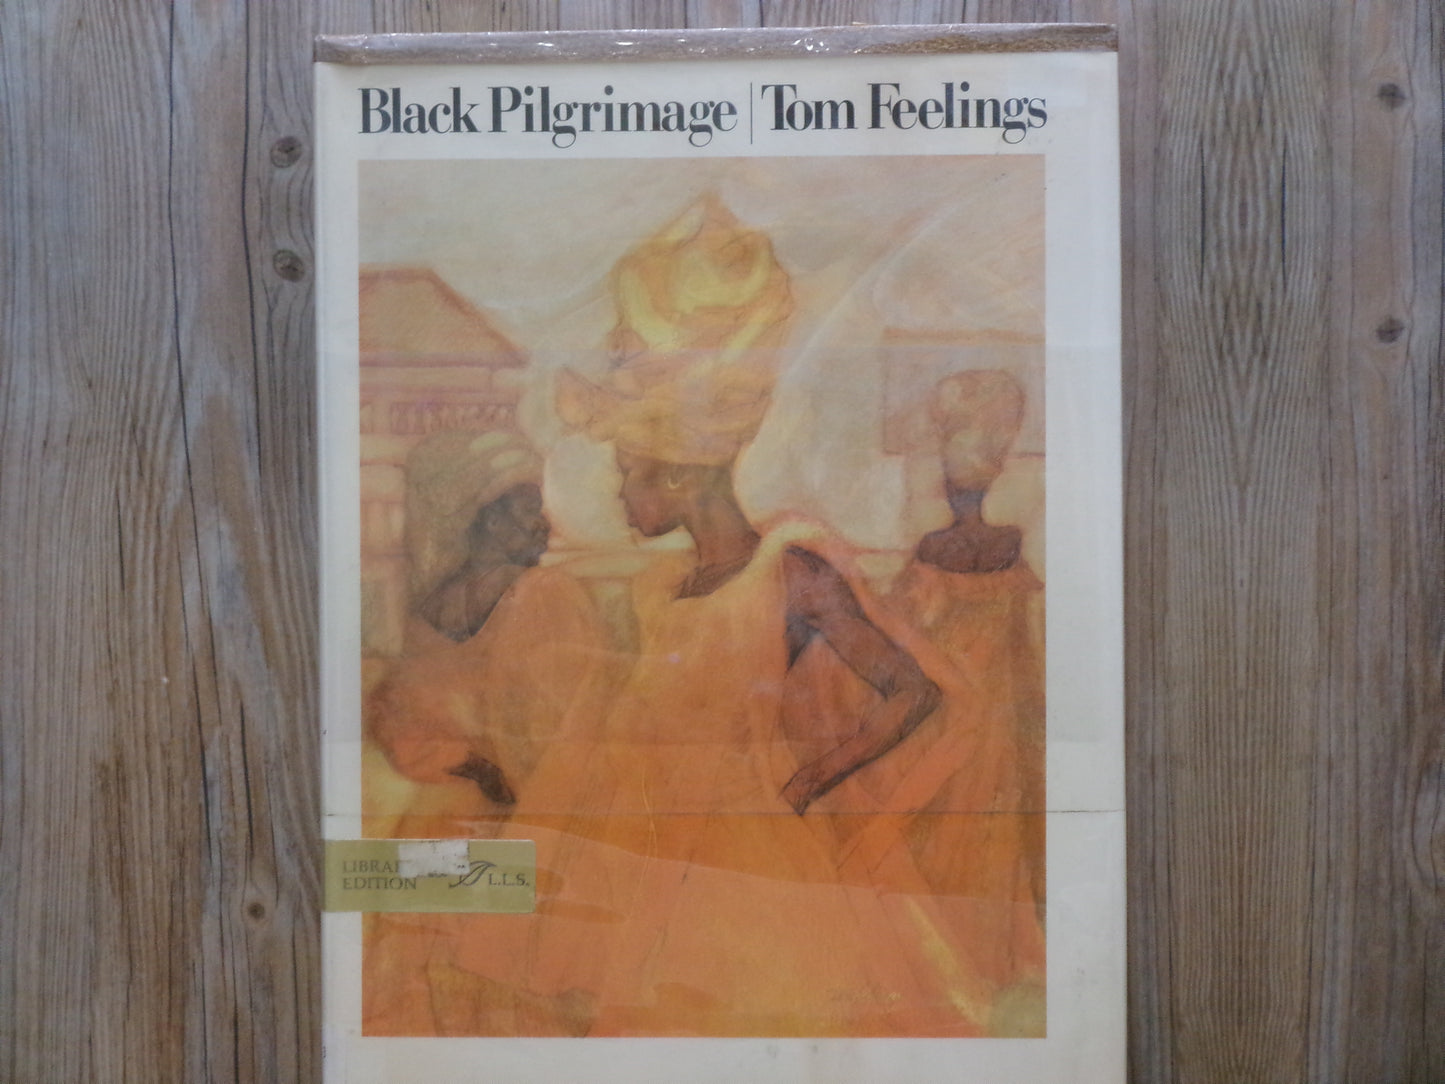 Black Pilgrimage by Tom Feelings